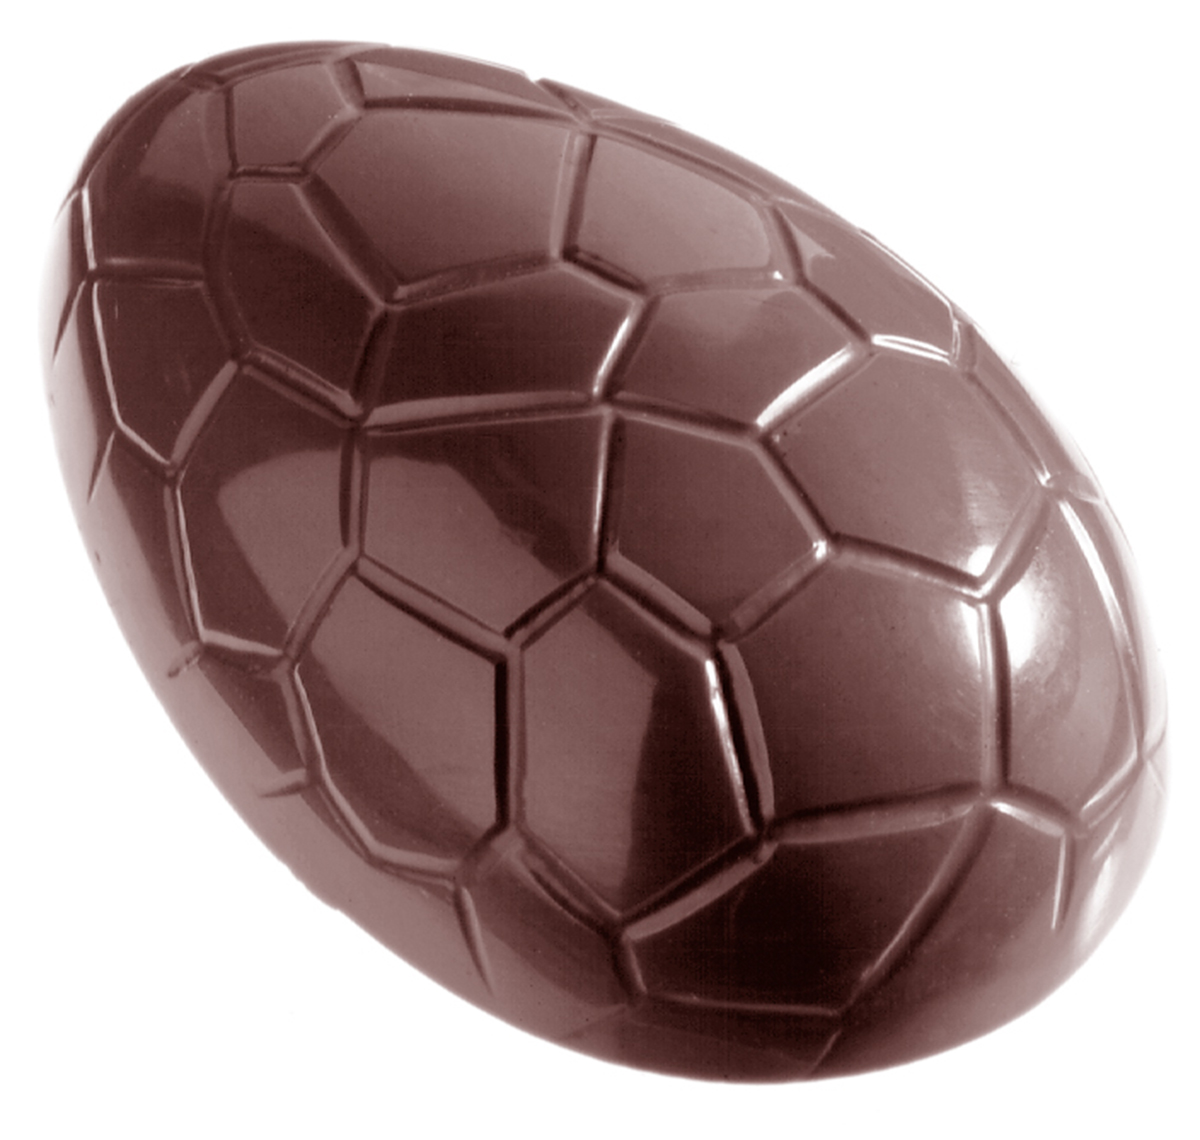 Billede af Professionel chokoladeform i polycarbonat - Egg kroko 8 cm CW2205